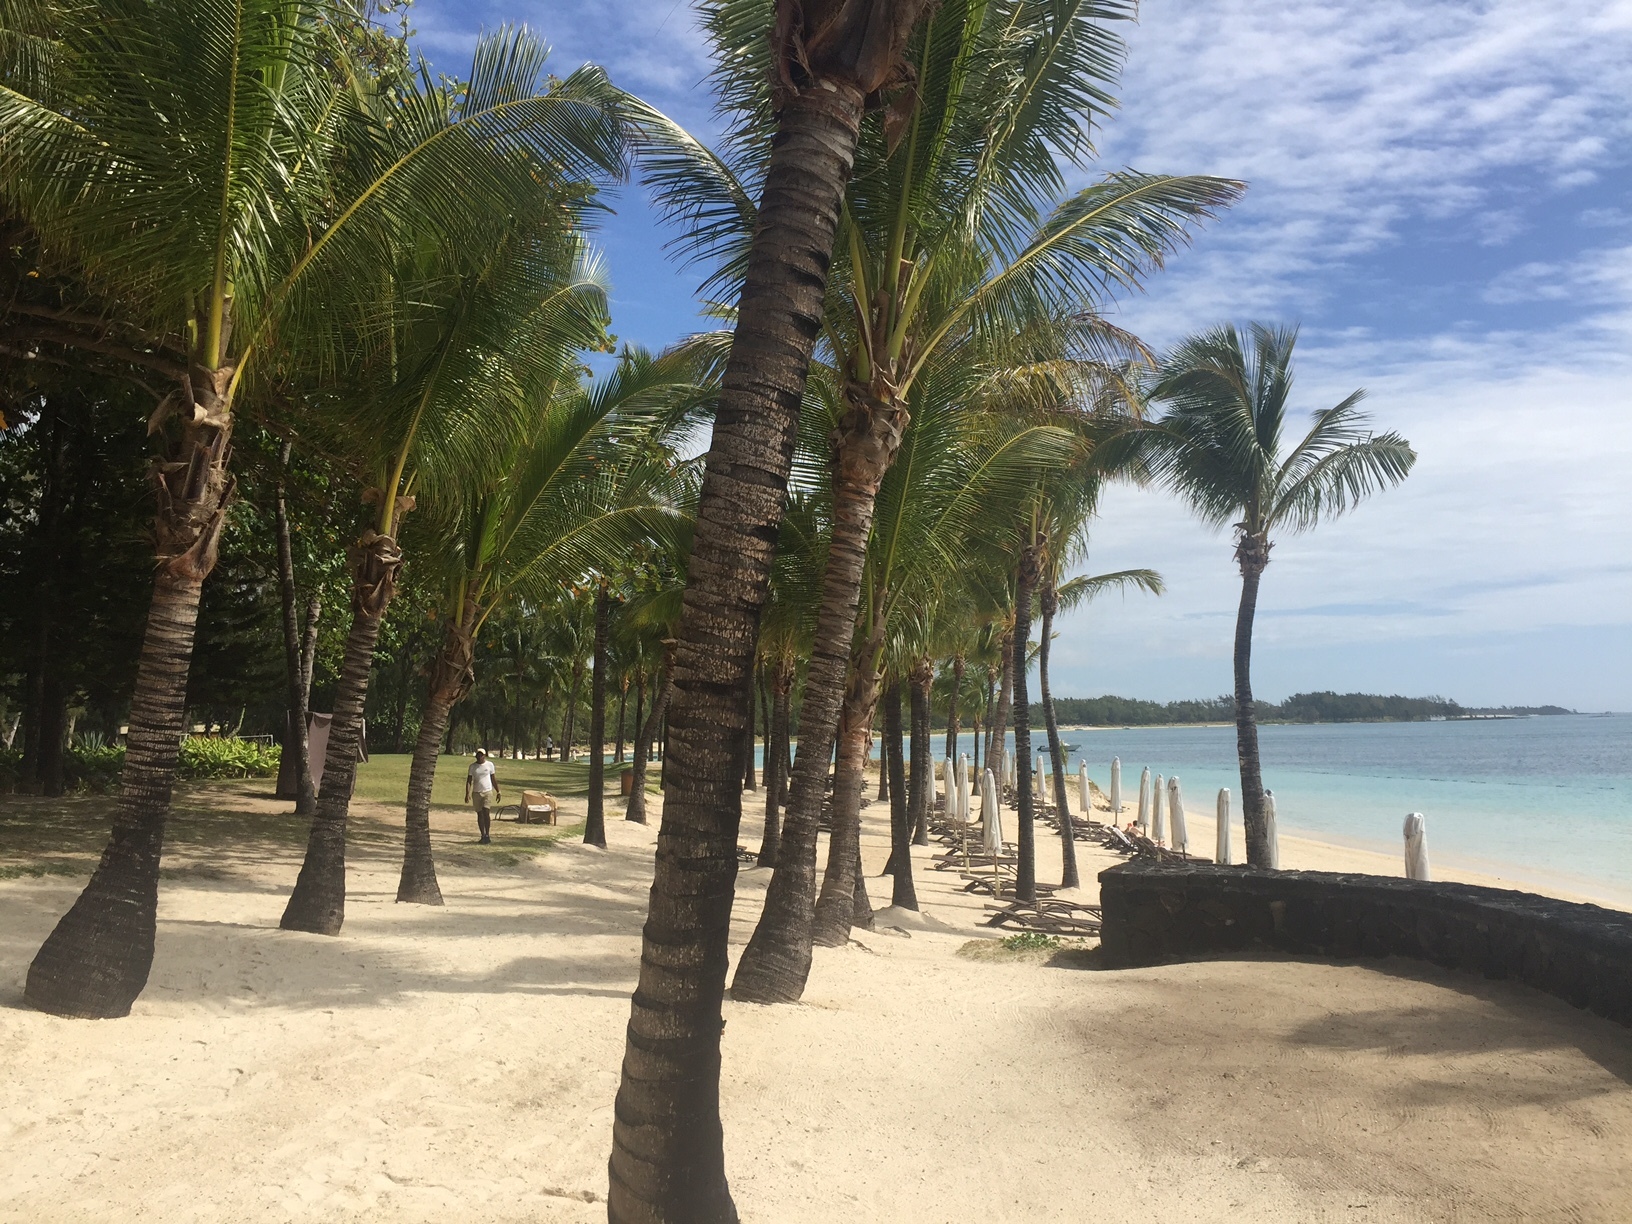 As son las playas de arena fina de la Isla Mauricio.